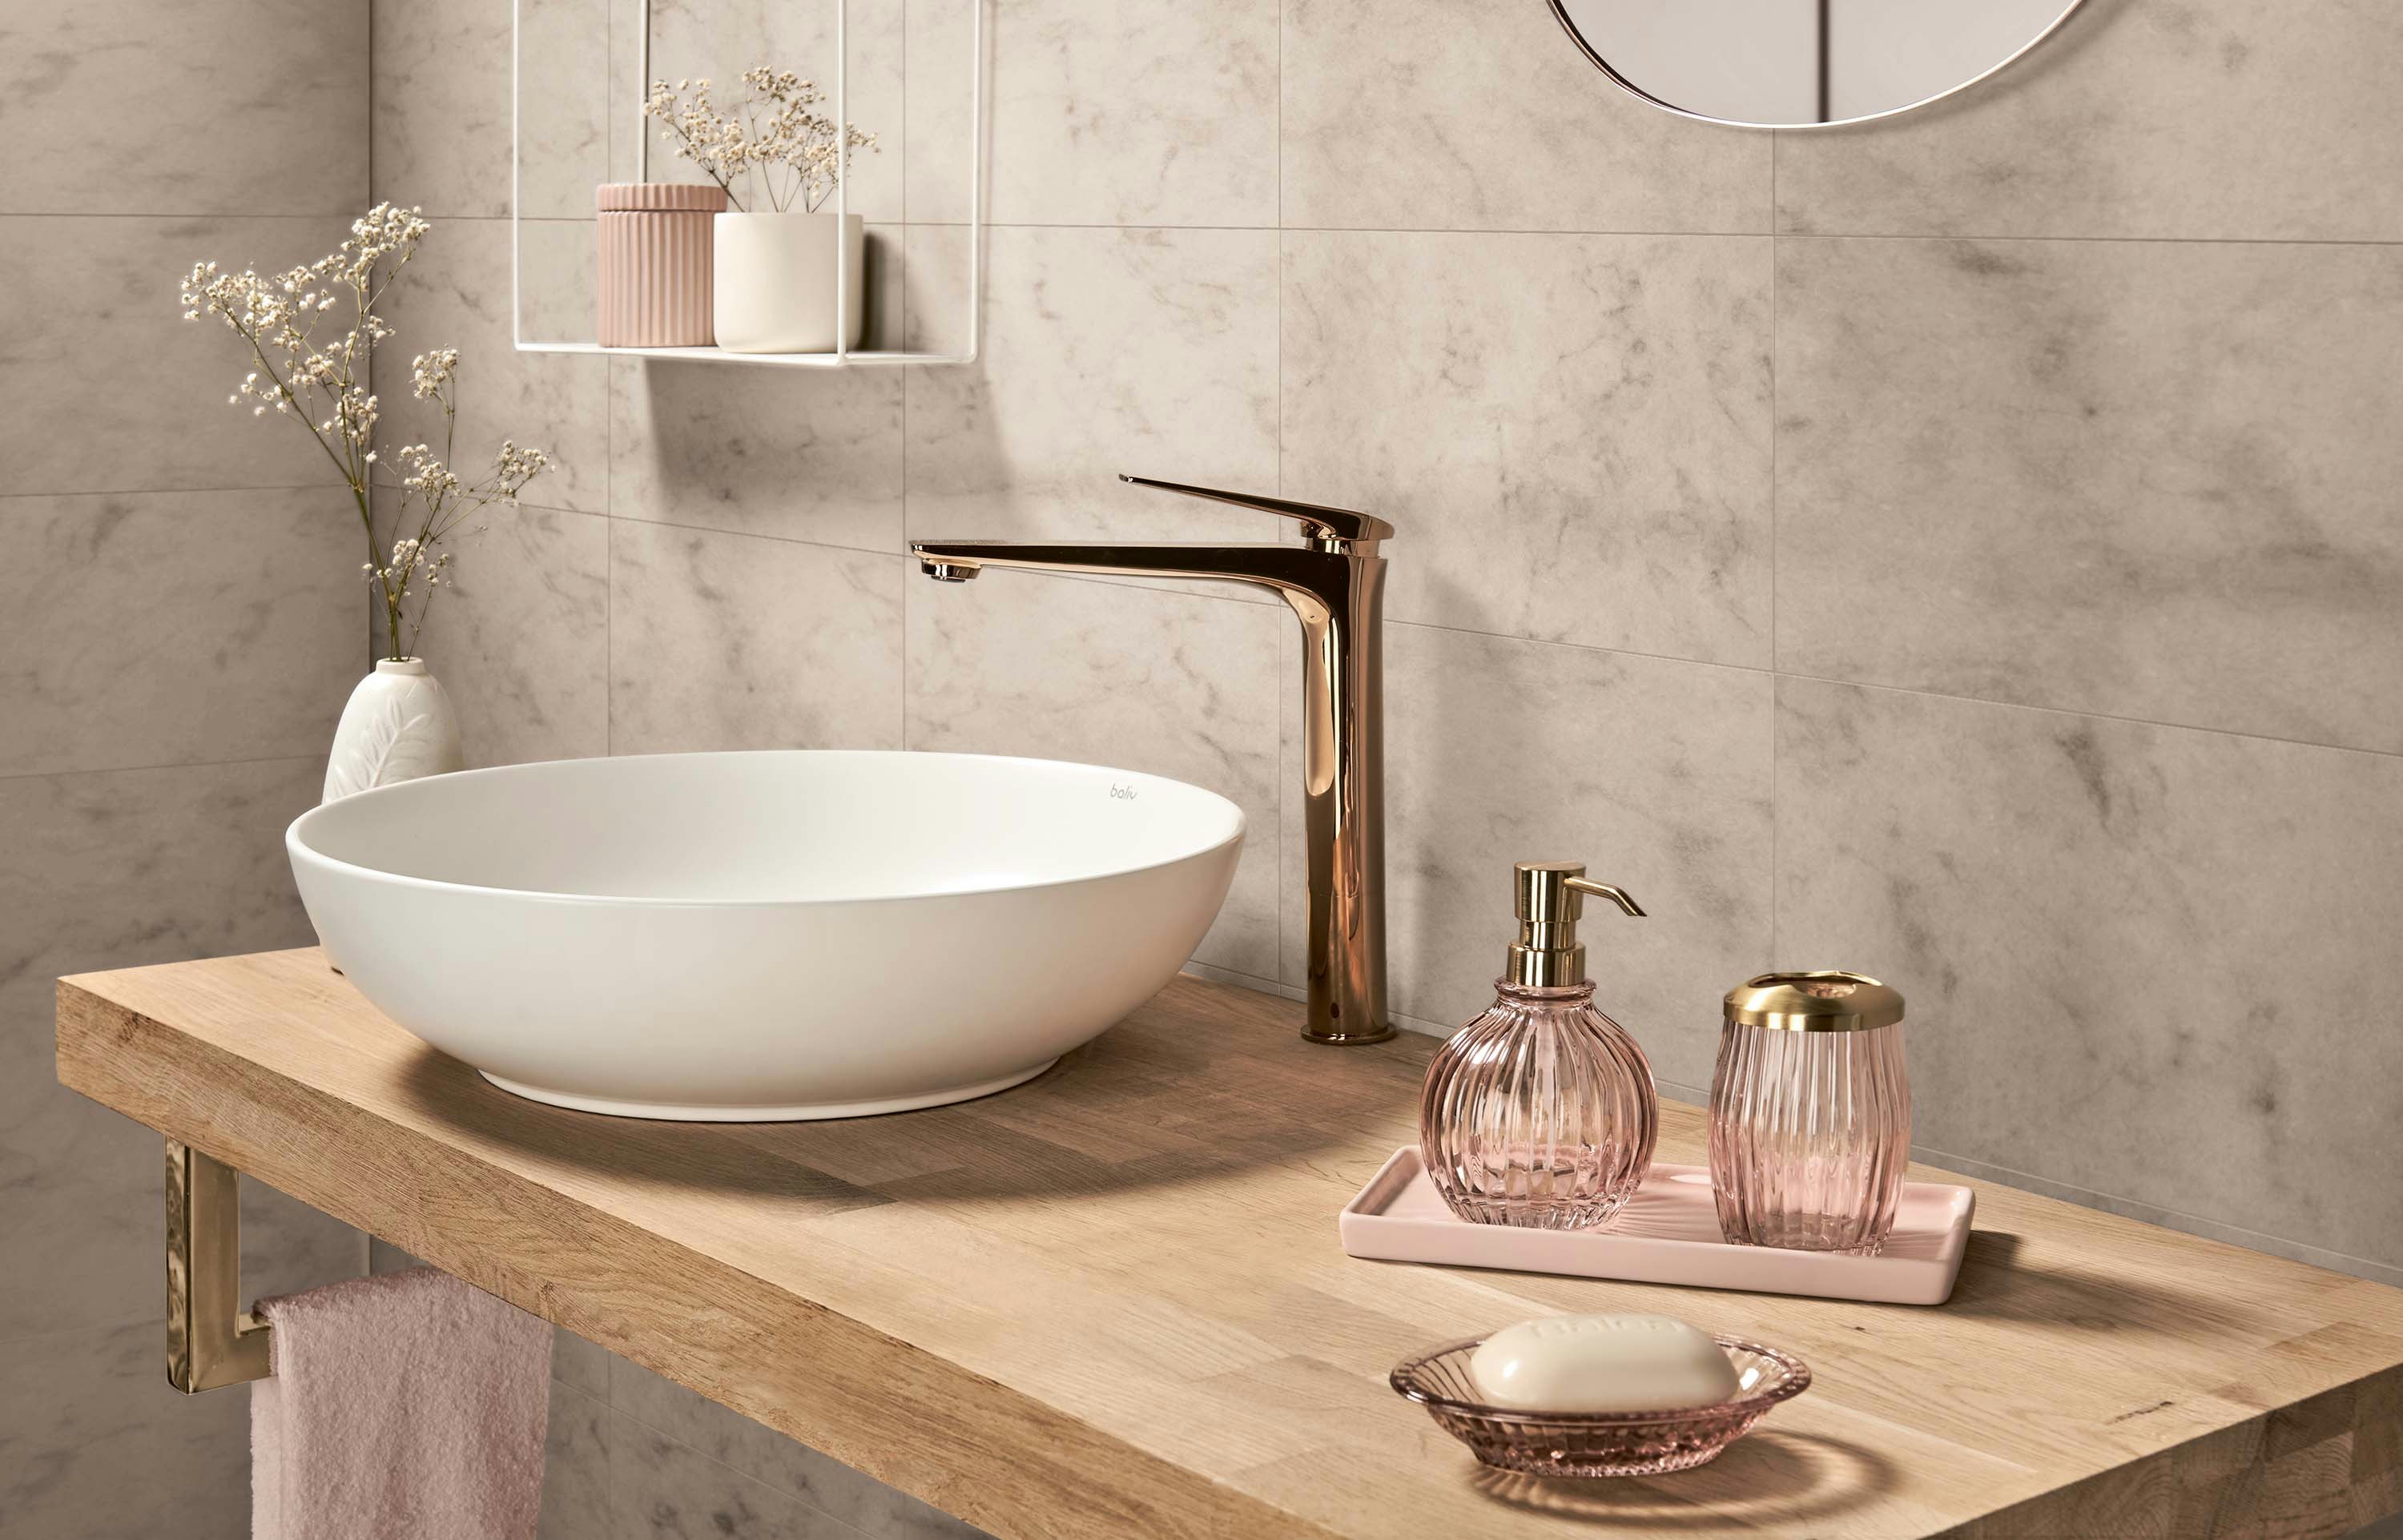 marmor im badezimmer - inspiration und tipps | obi